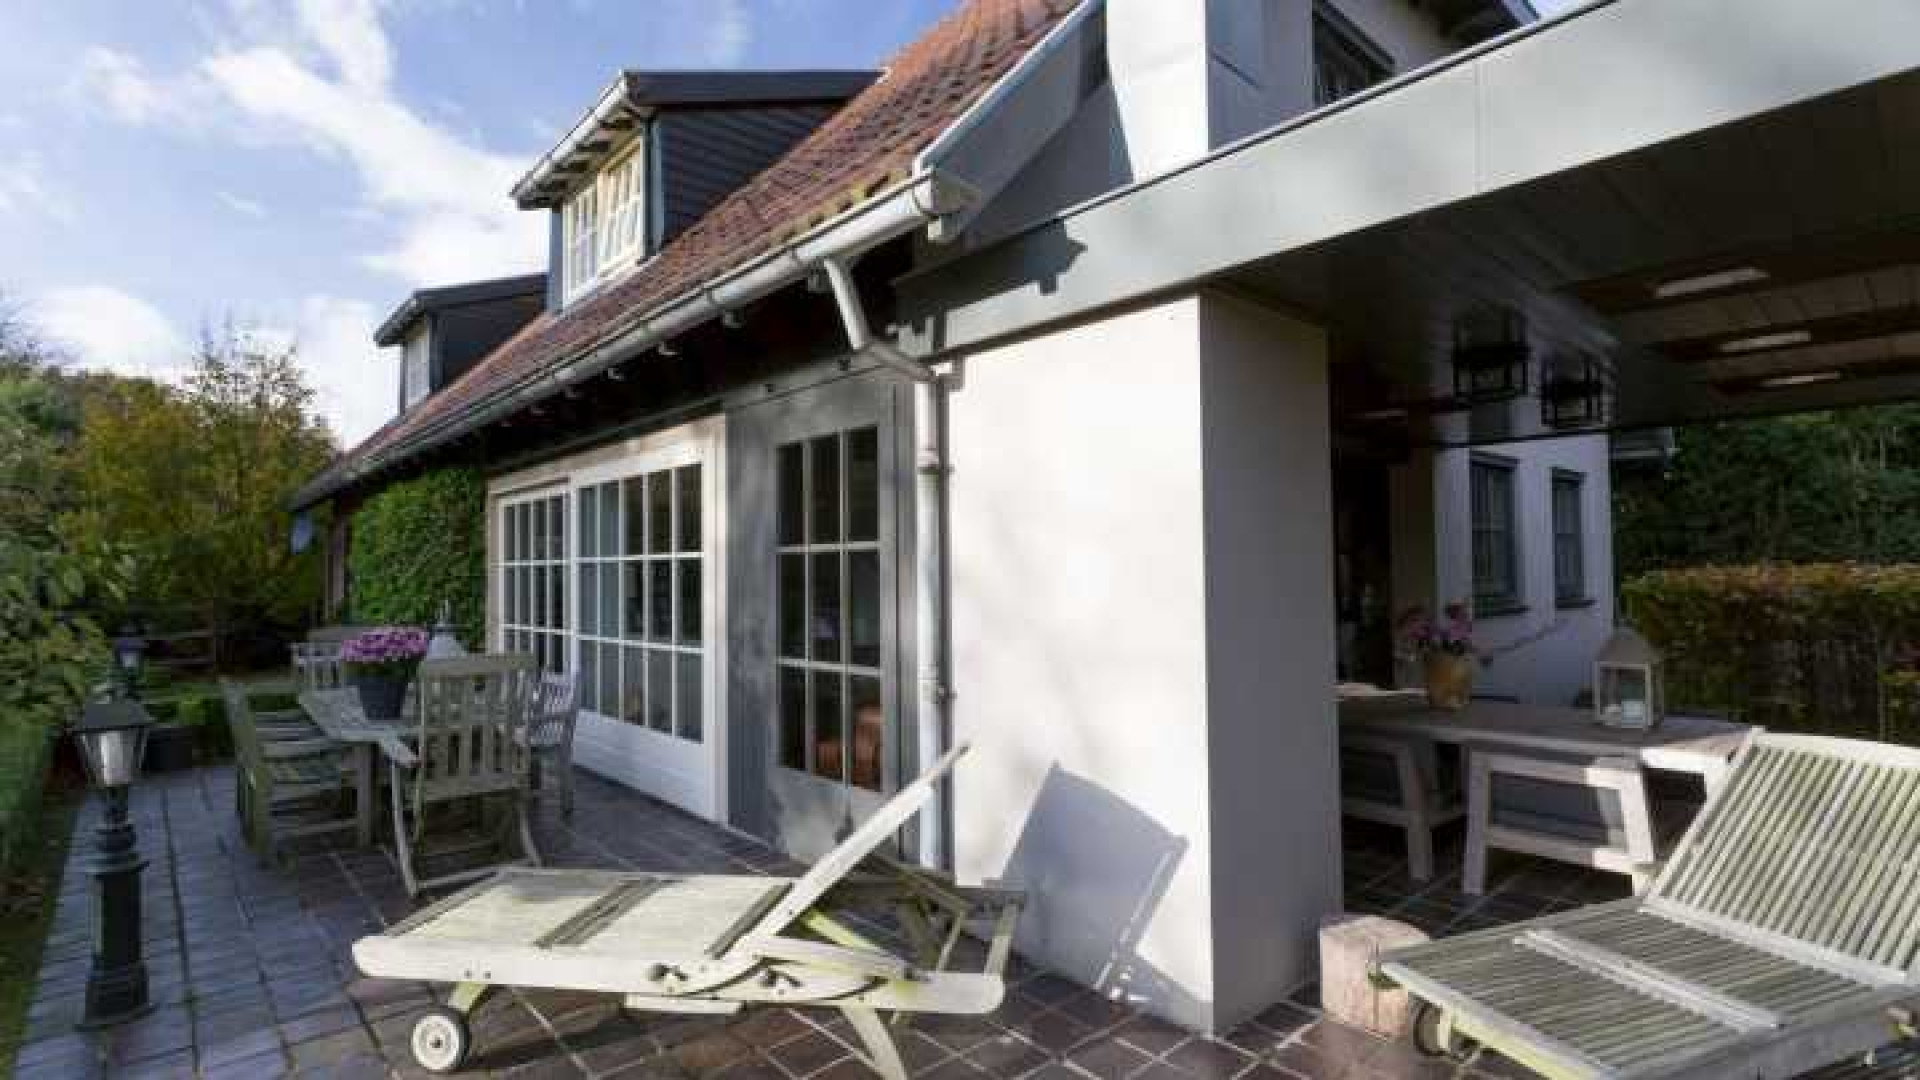 Henny Huisman verkoopt zijn villa zwaar onder de vraagprijs. Zie foto's 44